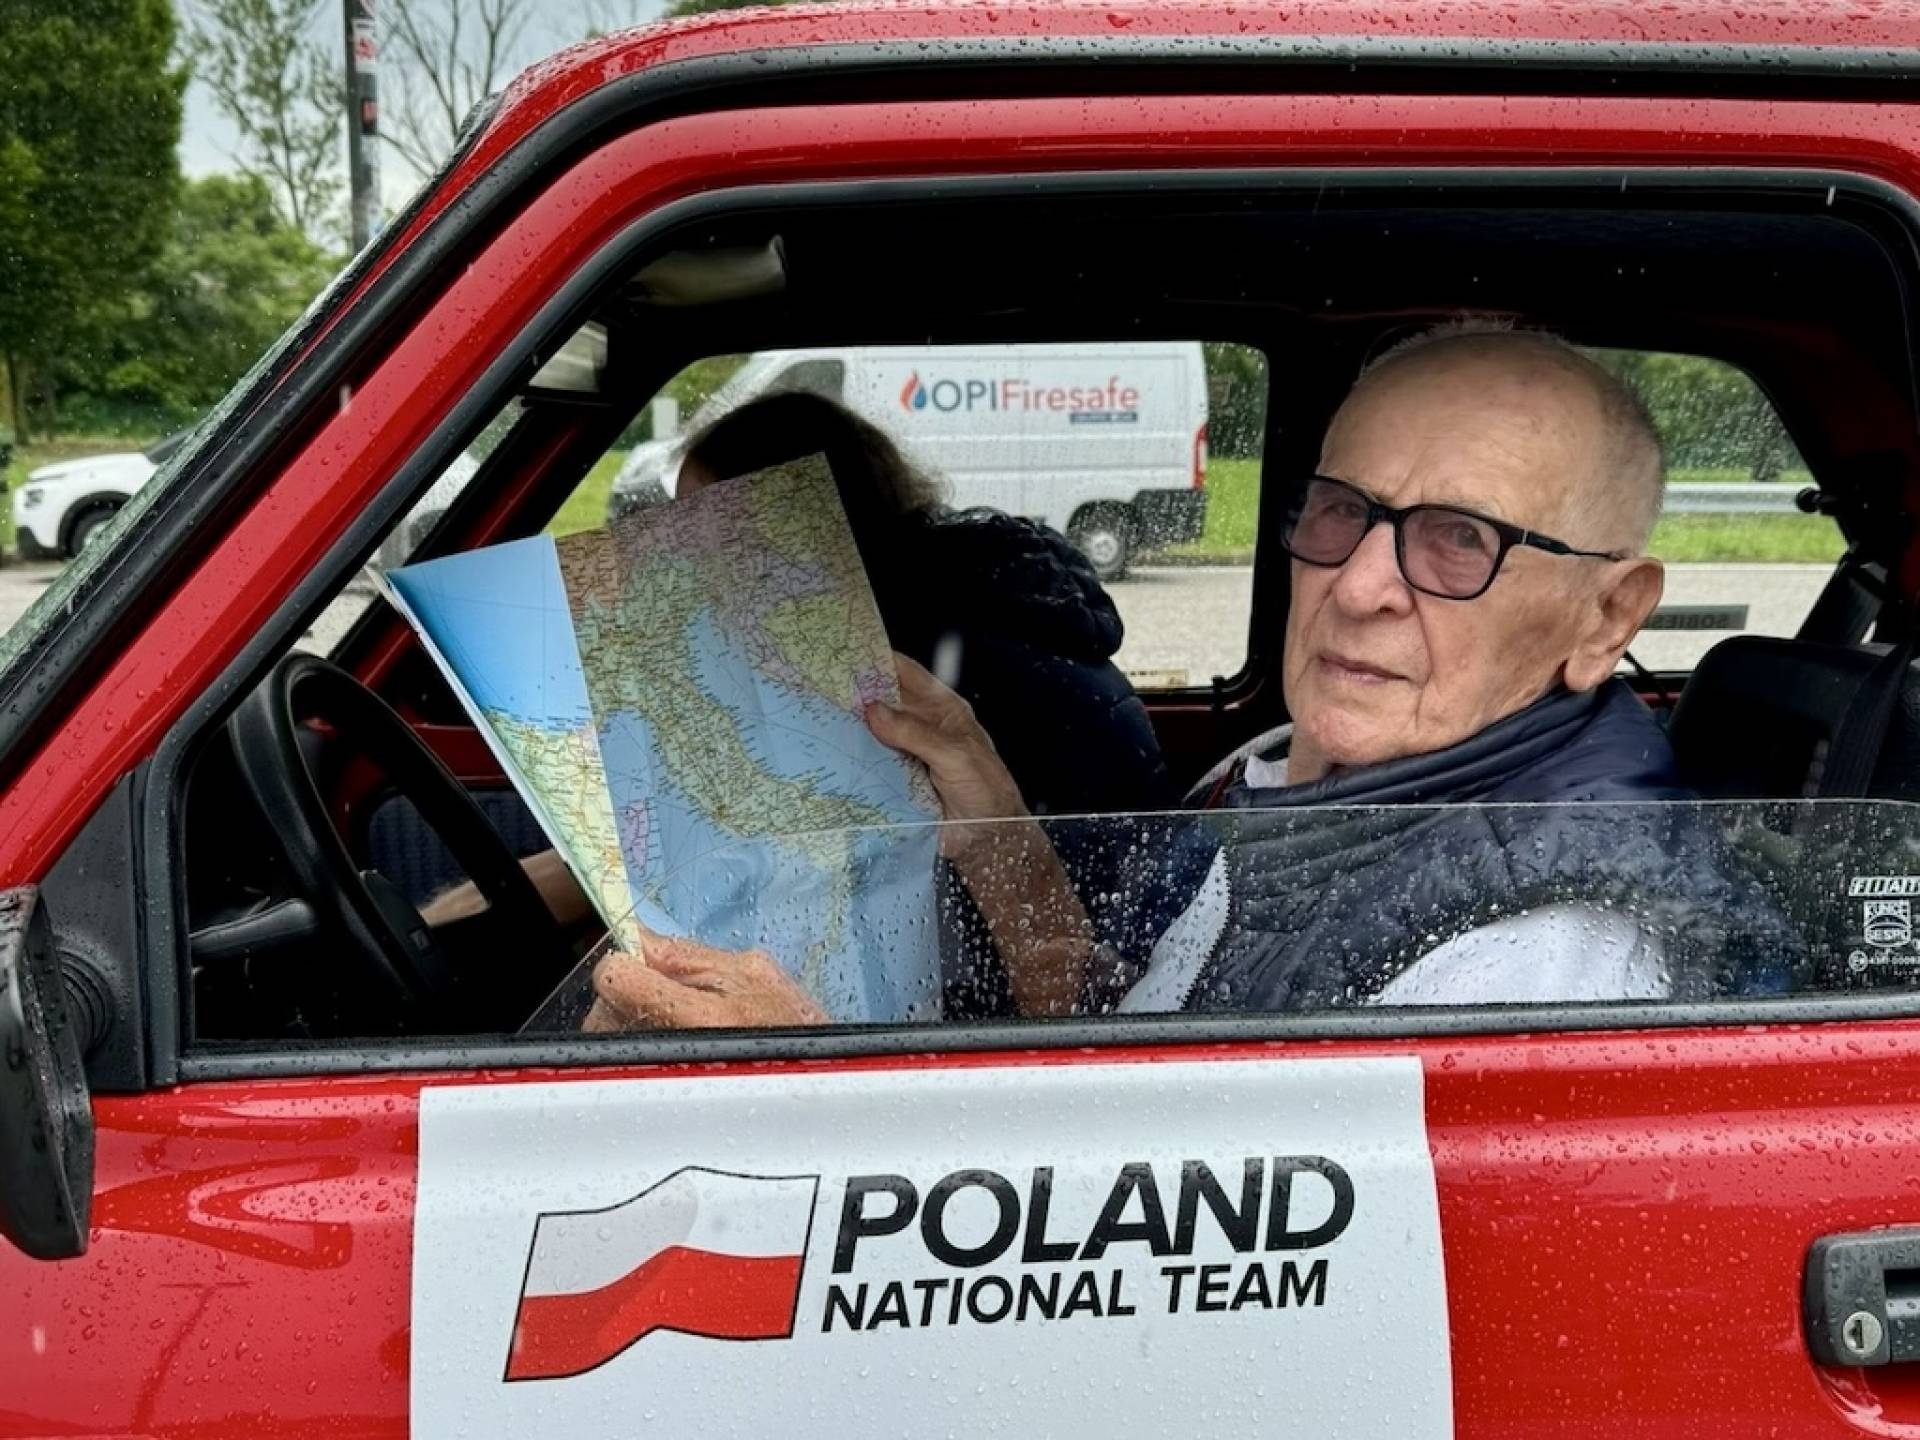 94-letni Sobiesław Zasada dotarł małym fiatem do celu, 1740 kilometrów za kółkiem